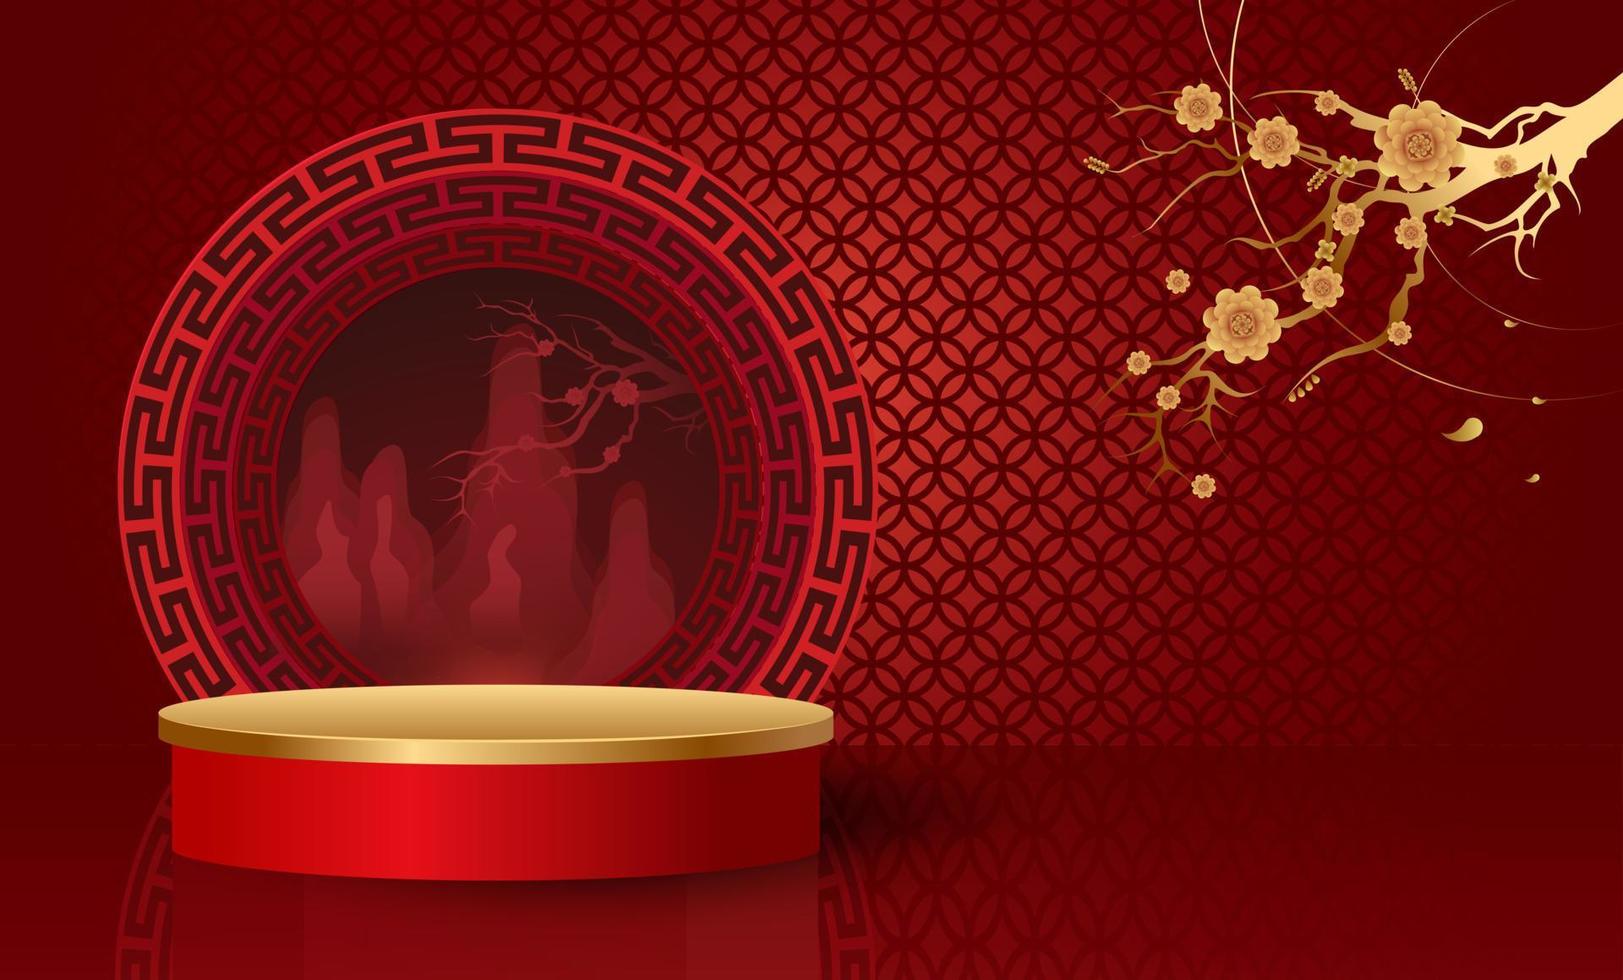 podio e sfondo per il capodanno cinese, feste cinesi, festival di metà autunno, elementi floreali ed asiatici sullo sfondo. vettore